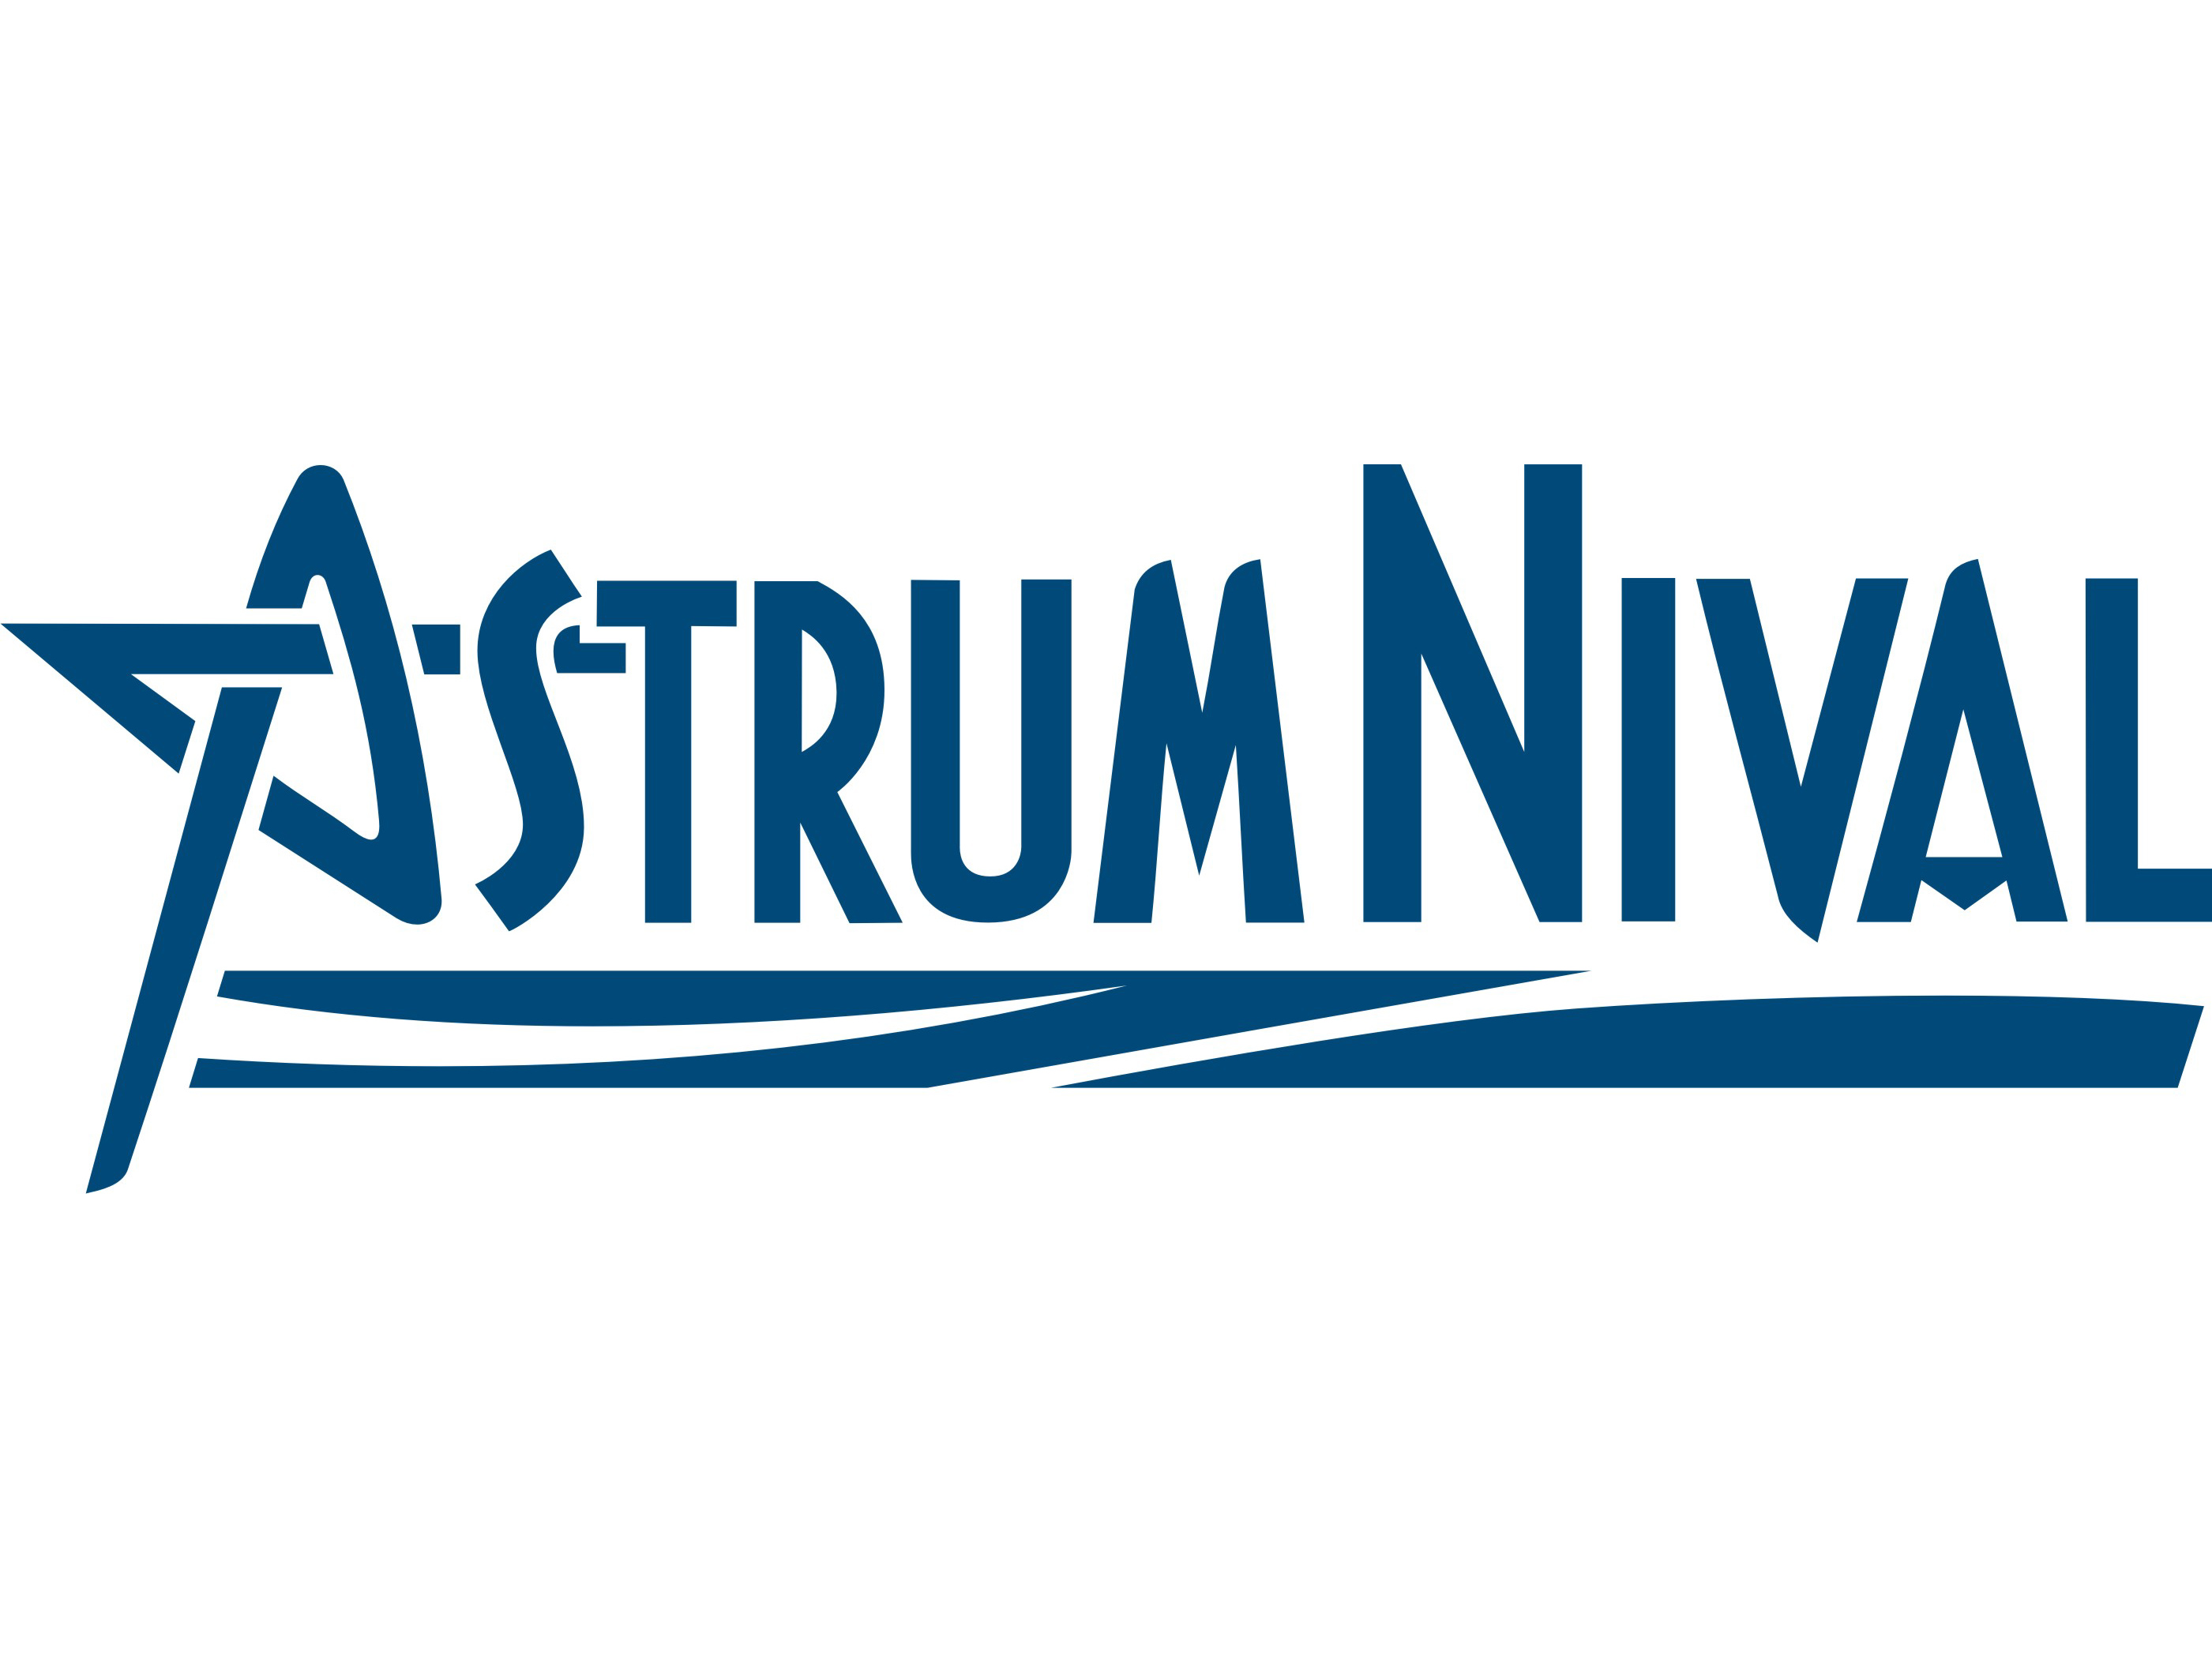 Astrum Online 